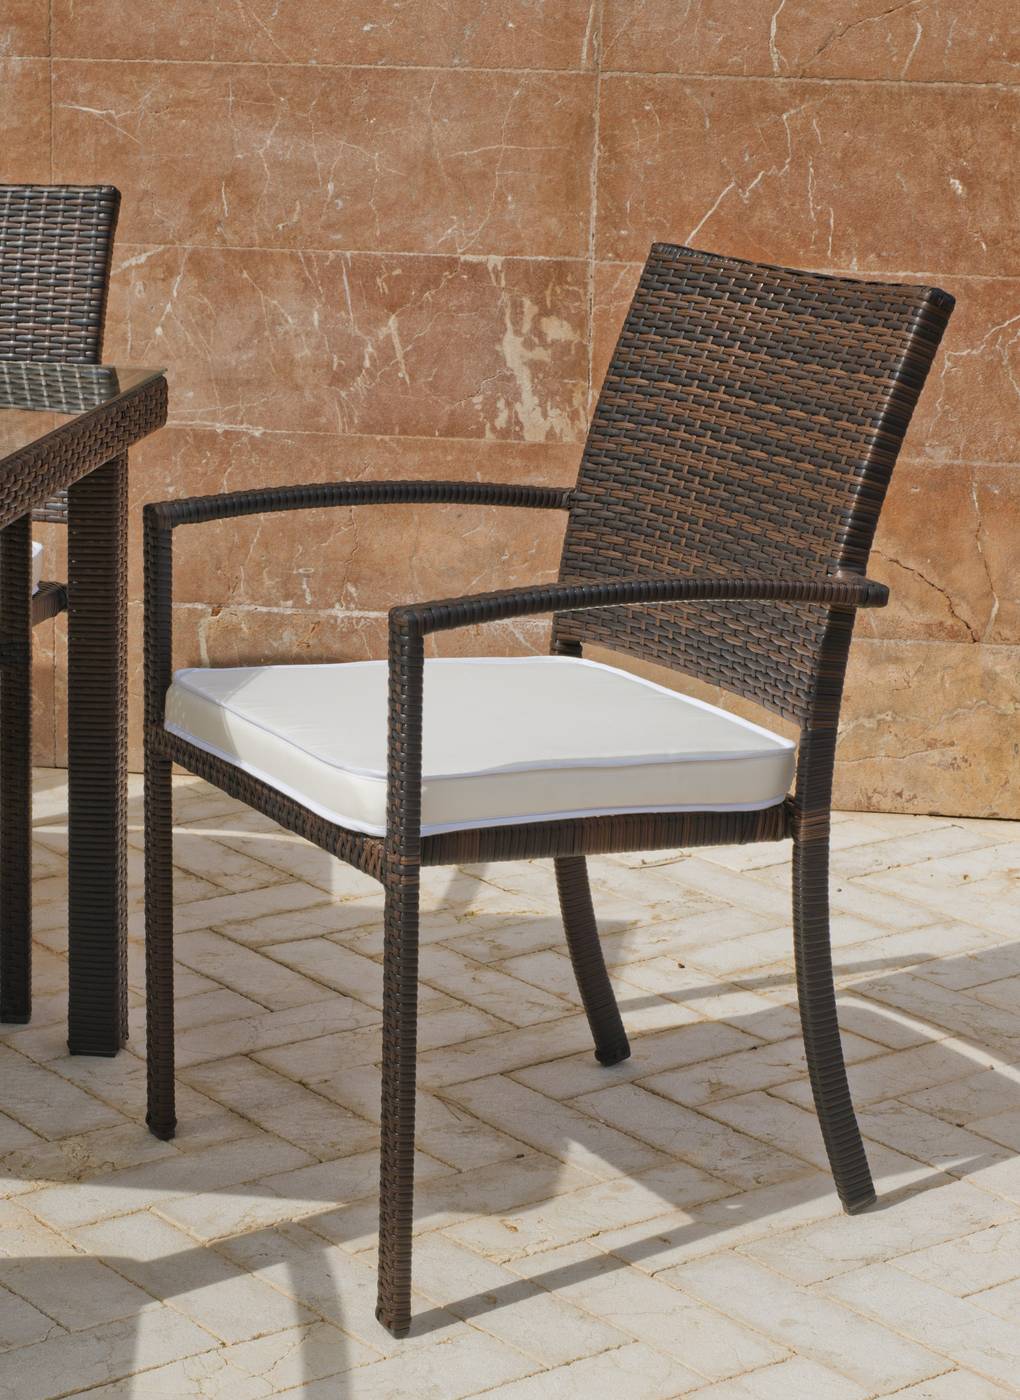 Conjunto Mosaico Bora90-Bahia - Conjunto de forja color marrón: mesa con tablero mosaico de 90 cm + 4 sillones de ratán sintético con cojines.